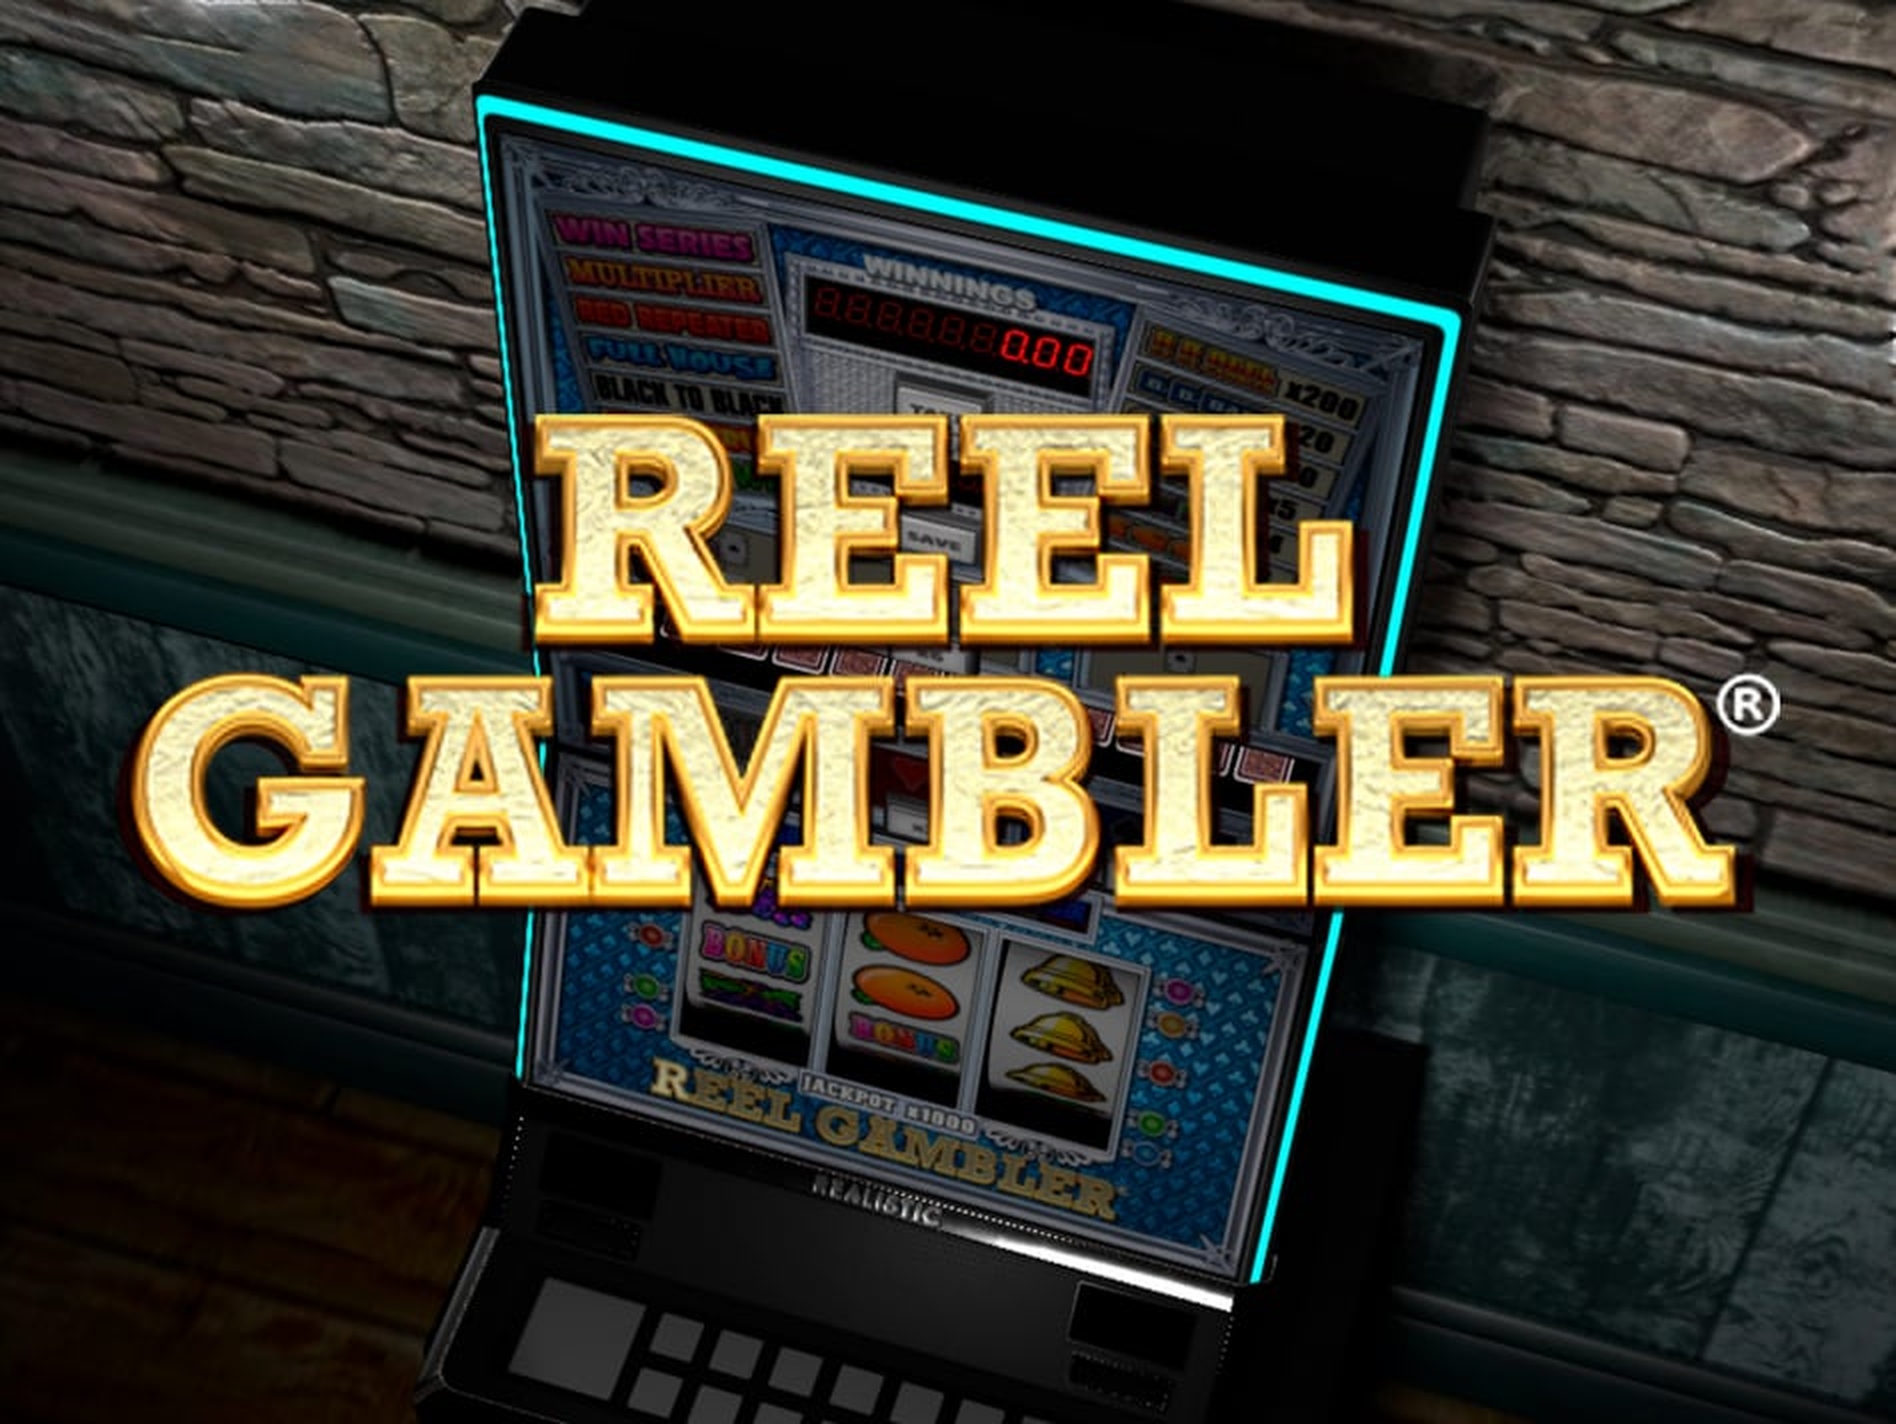 Reel Gambler demo